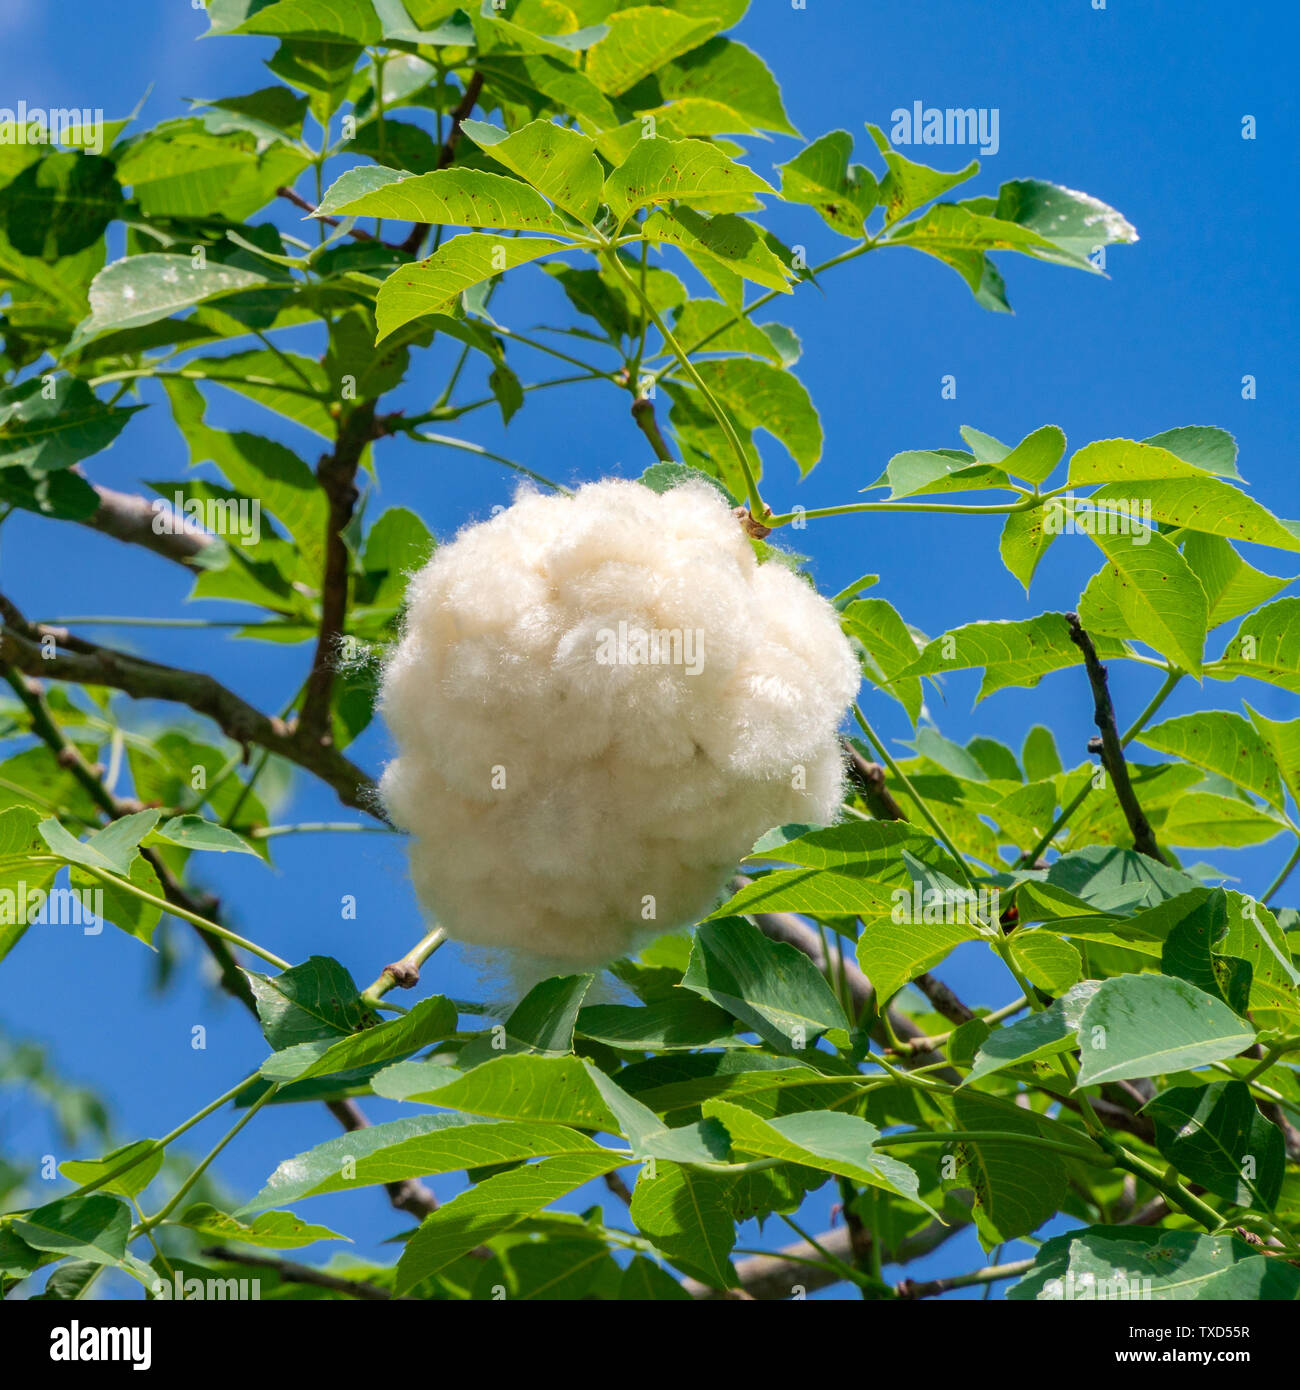 Fiore di baobab immagini e fotografie stock ad alta risoluzione - Alamy